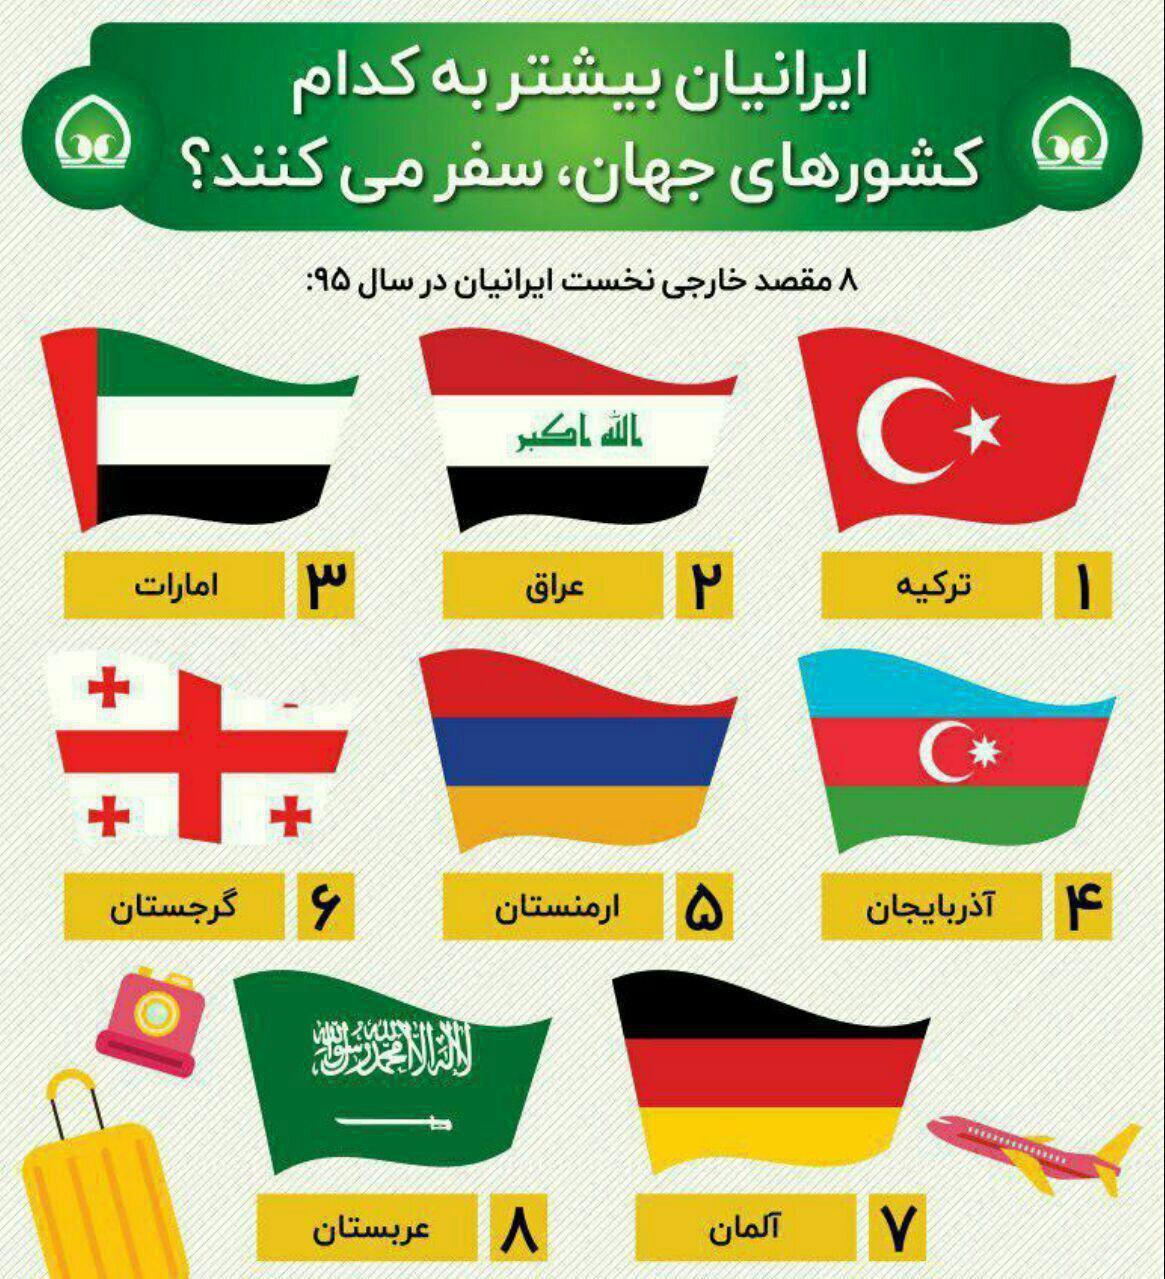 ایرانیان بیشتر به کدام کشورهای جهان سفر می کنند